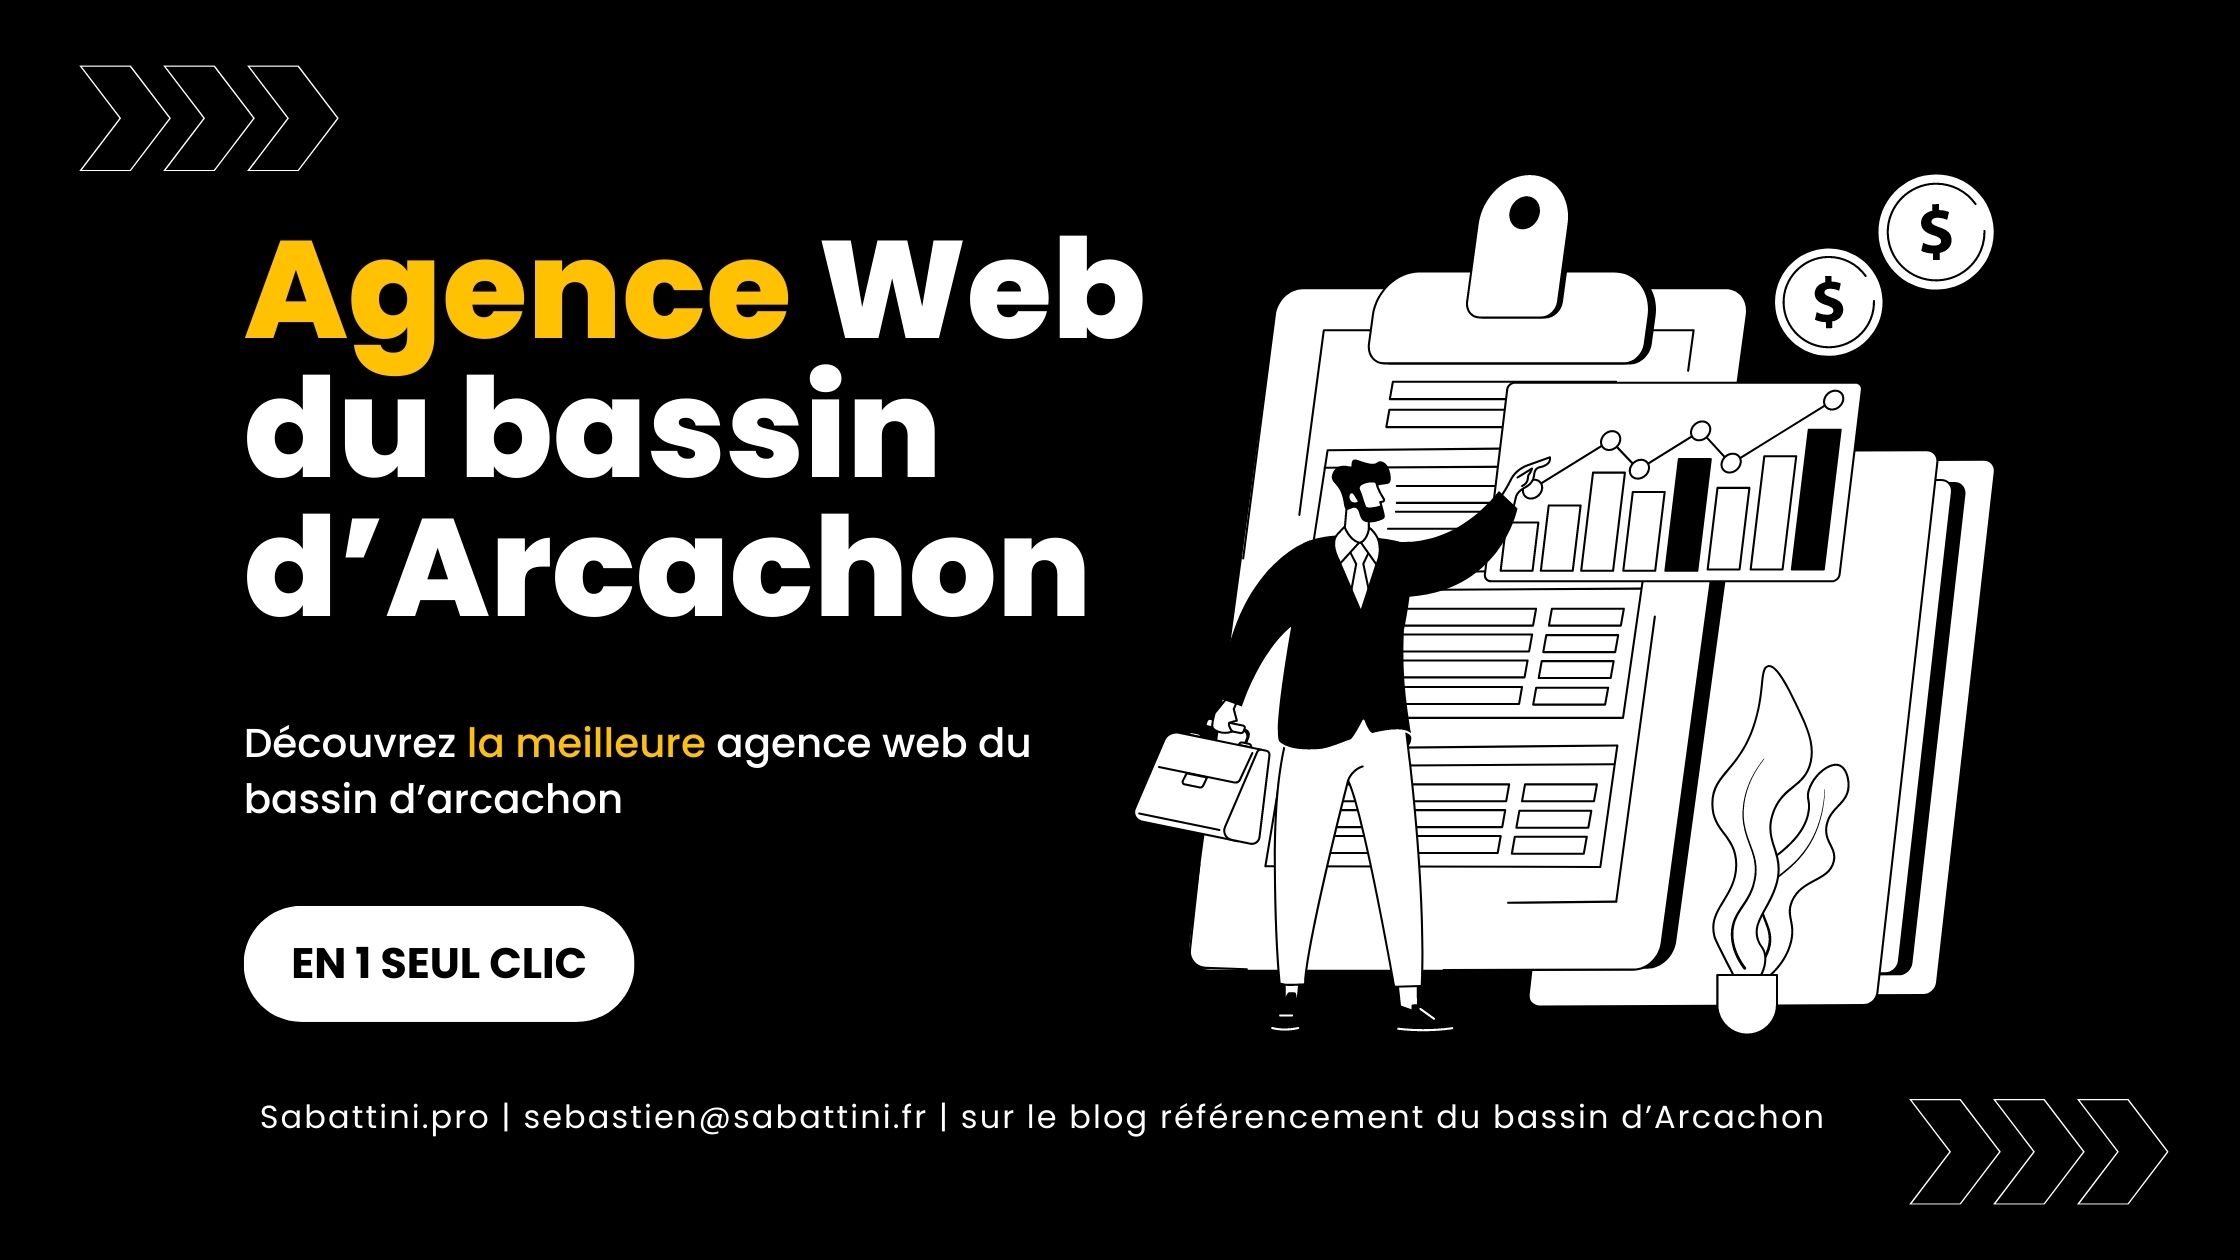 Agence web digitale SEO du bassin d’Arcachon